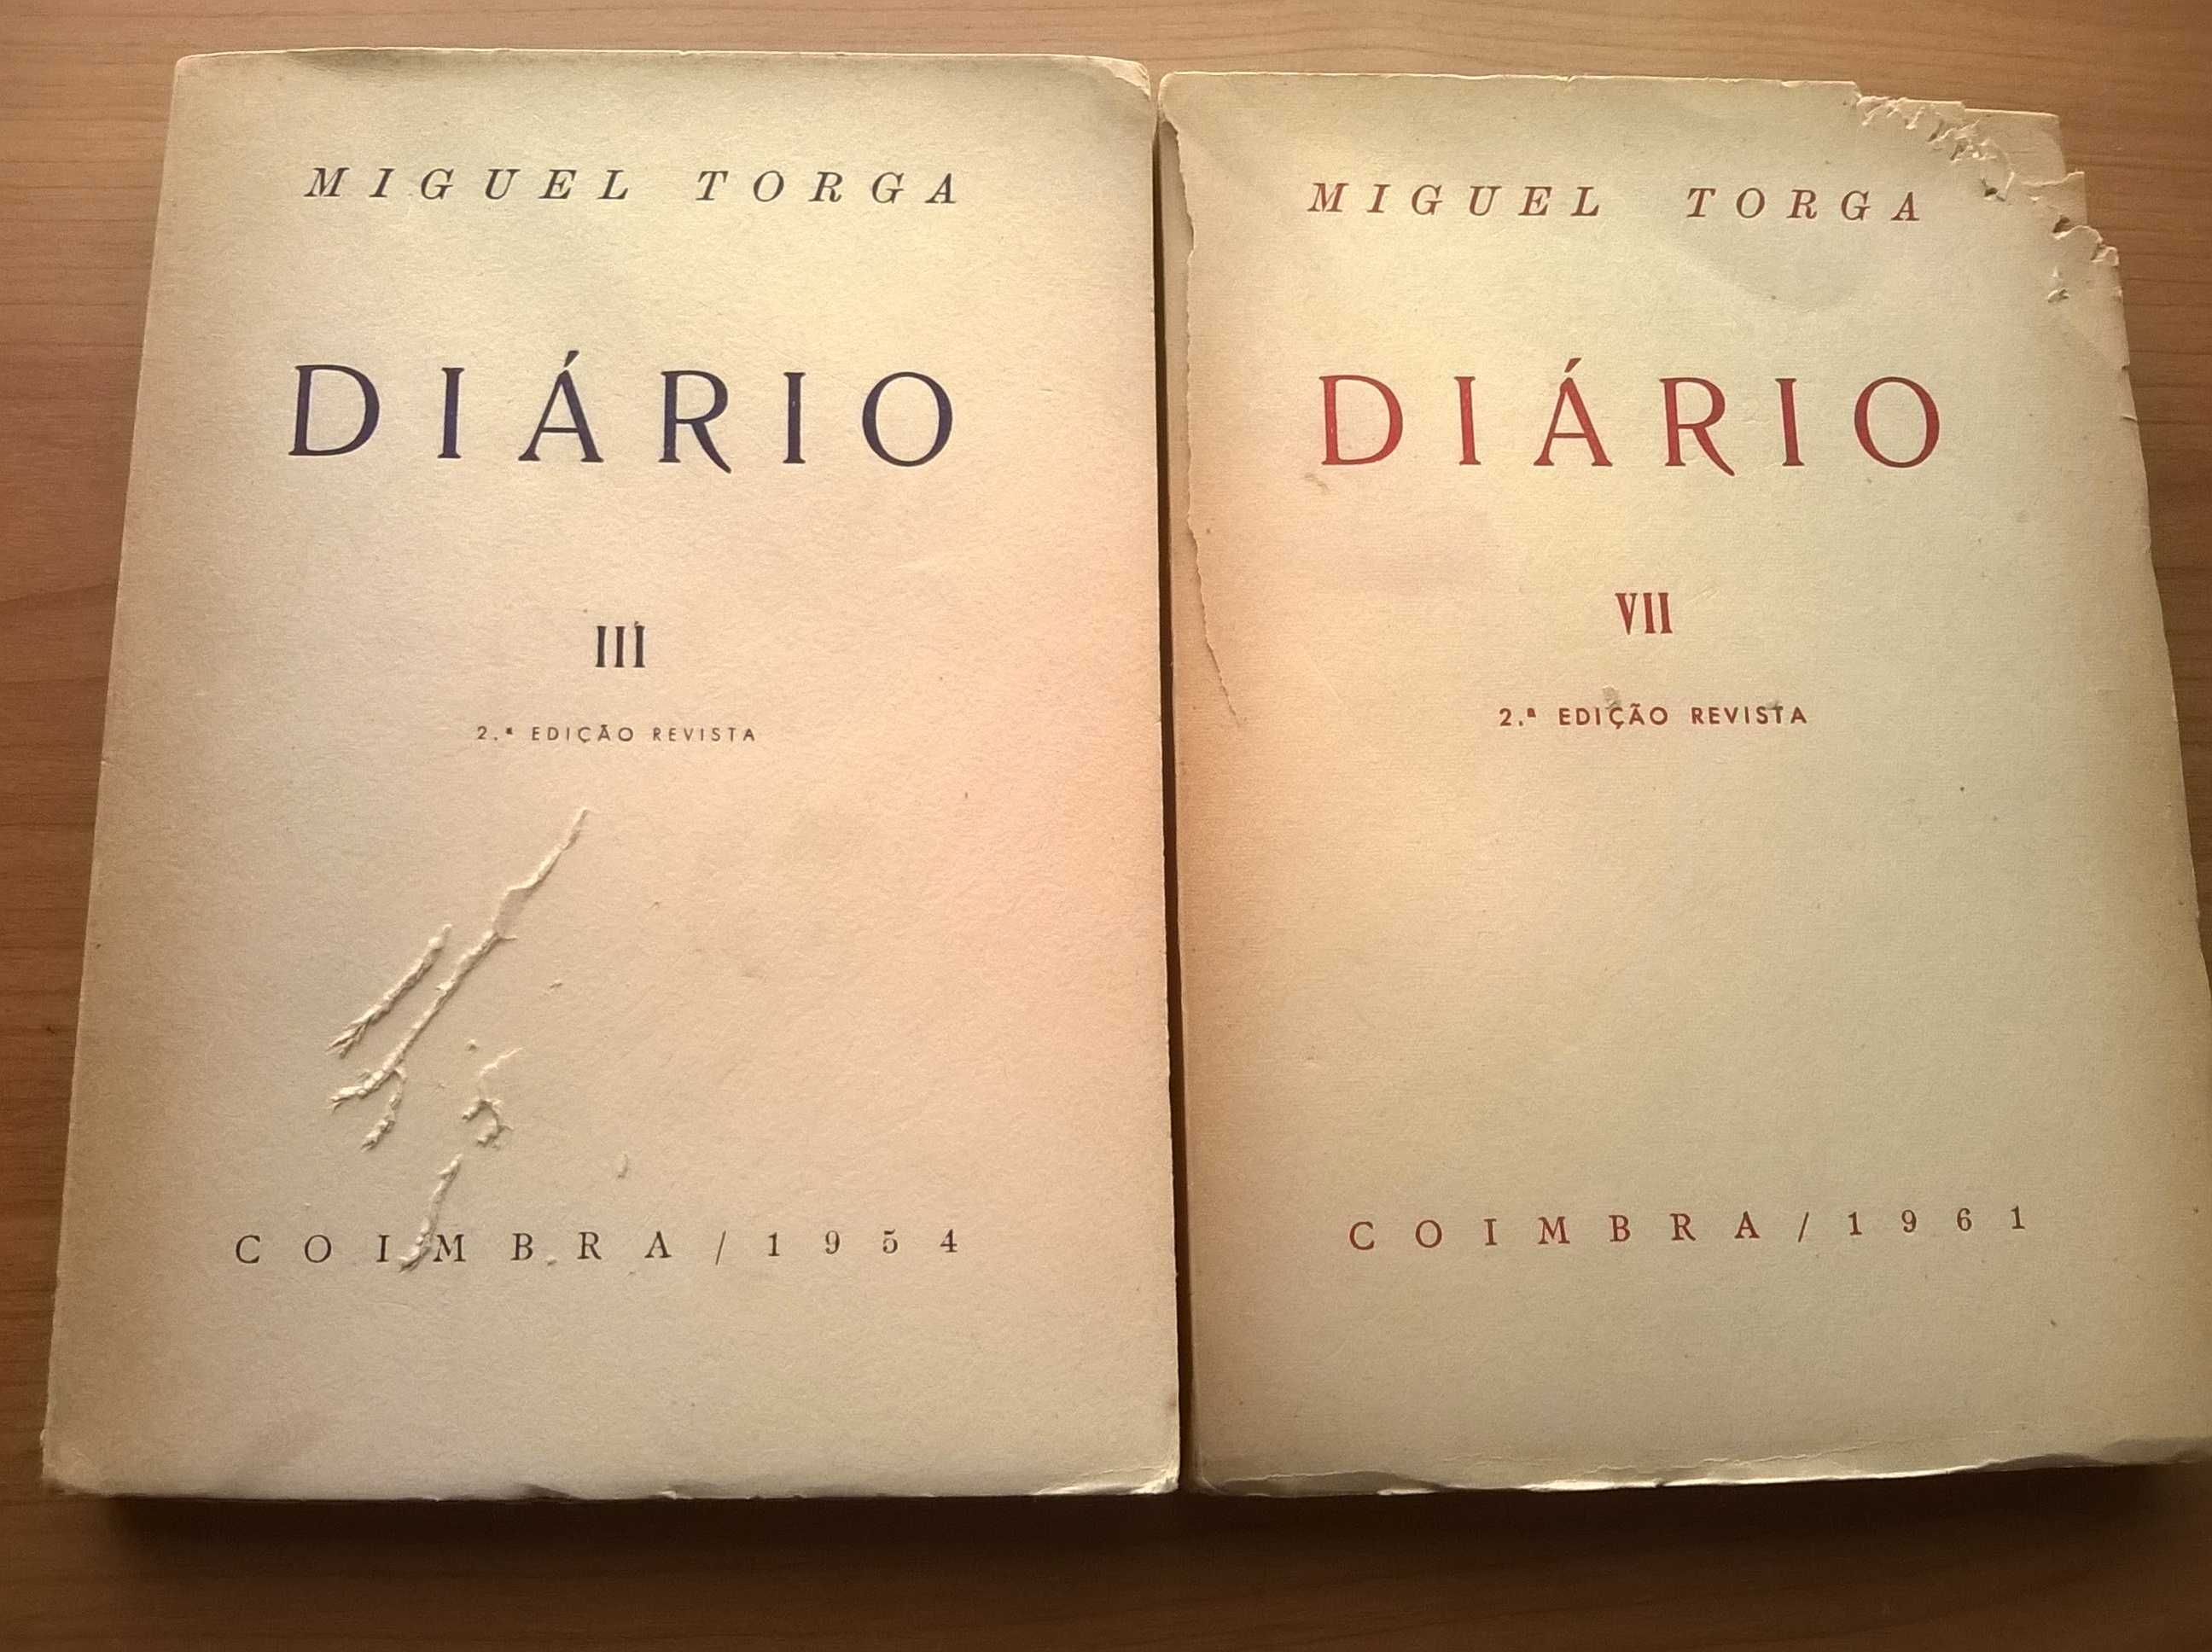 Diários III e VII (2.ª ed. 8€ cada) - Miguel Torga